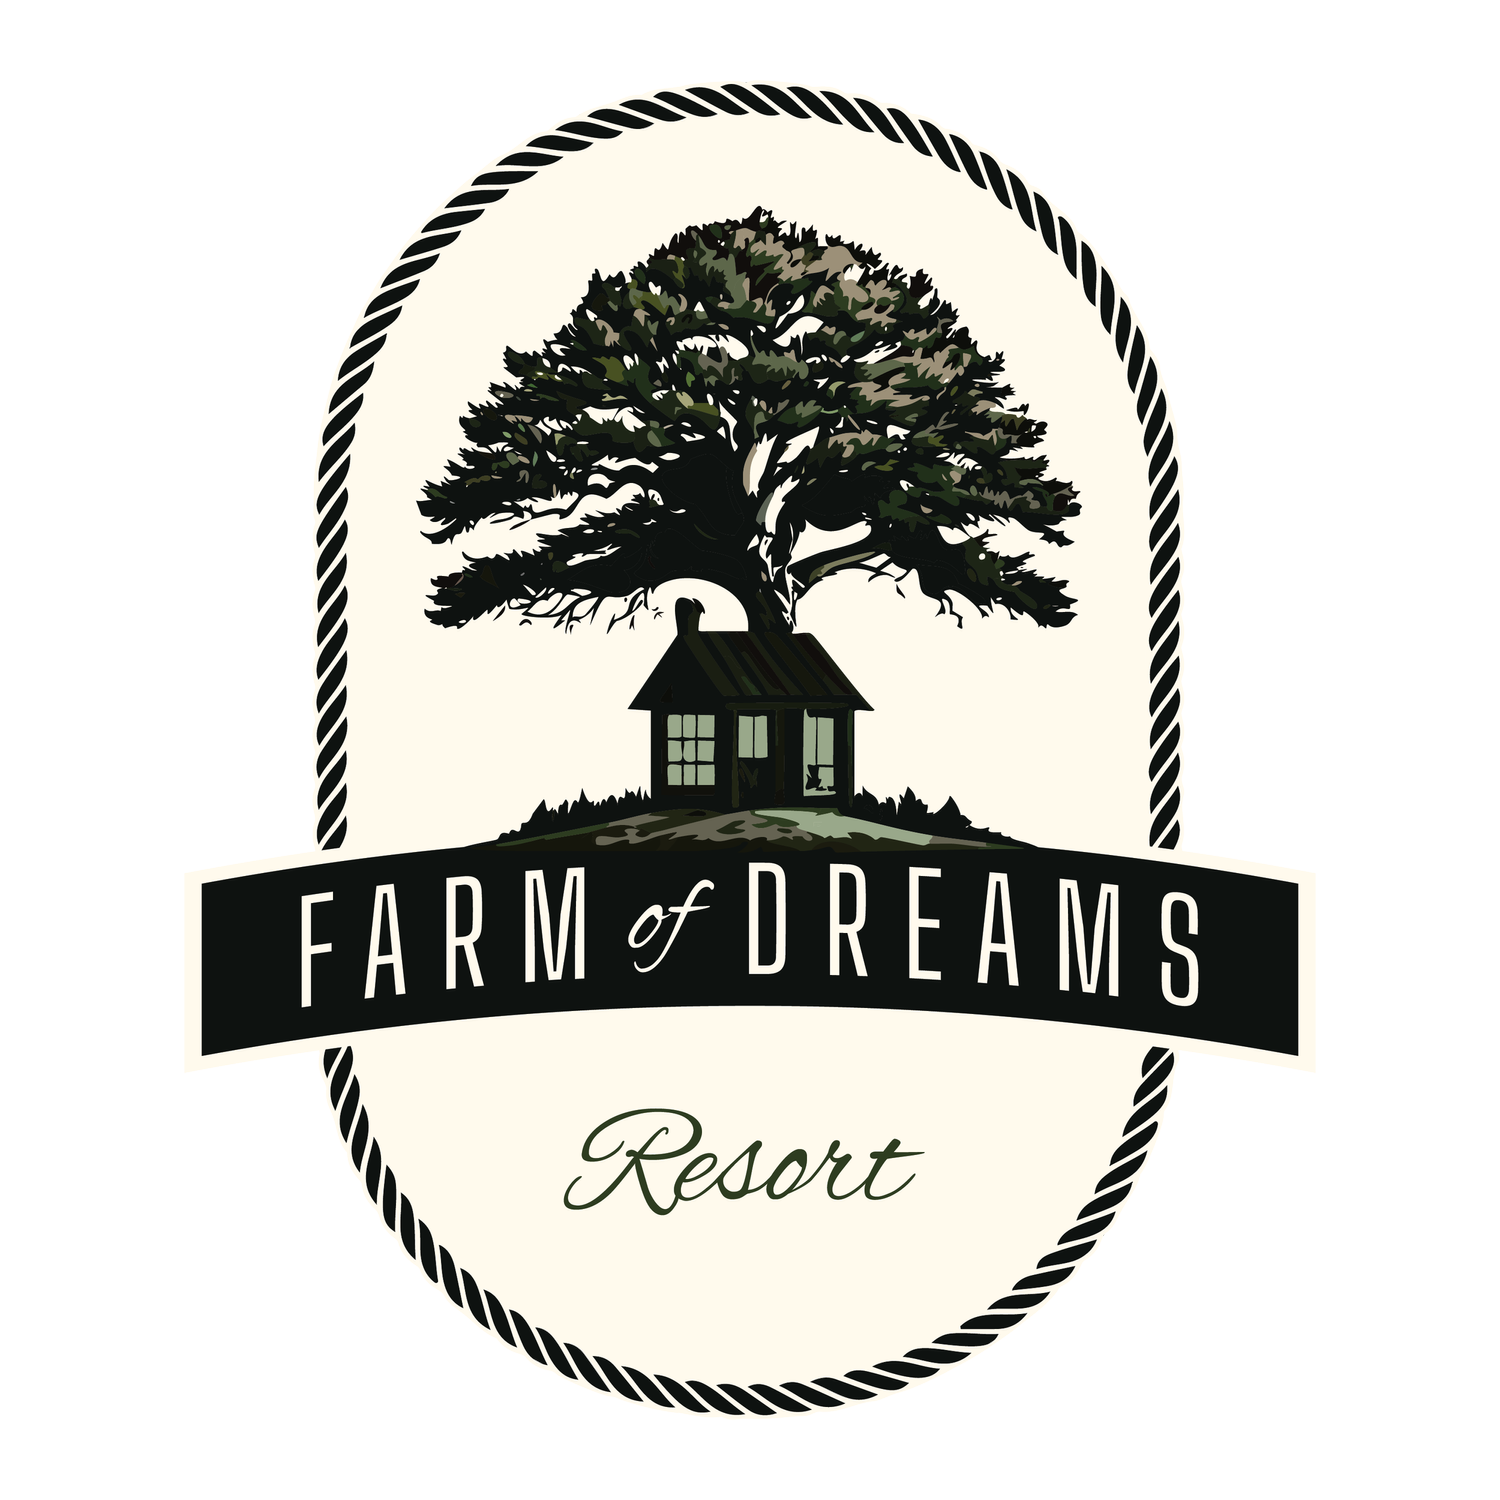 Farm of Dreams Resort